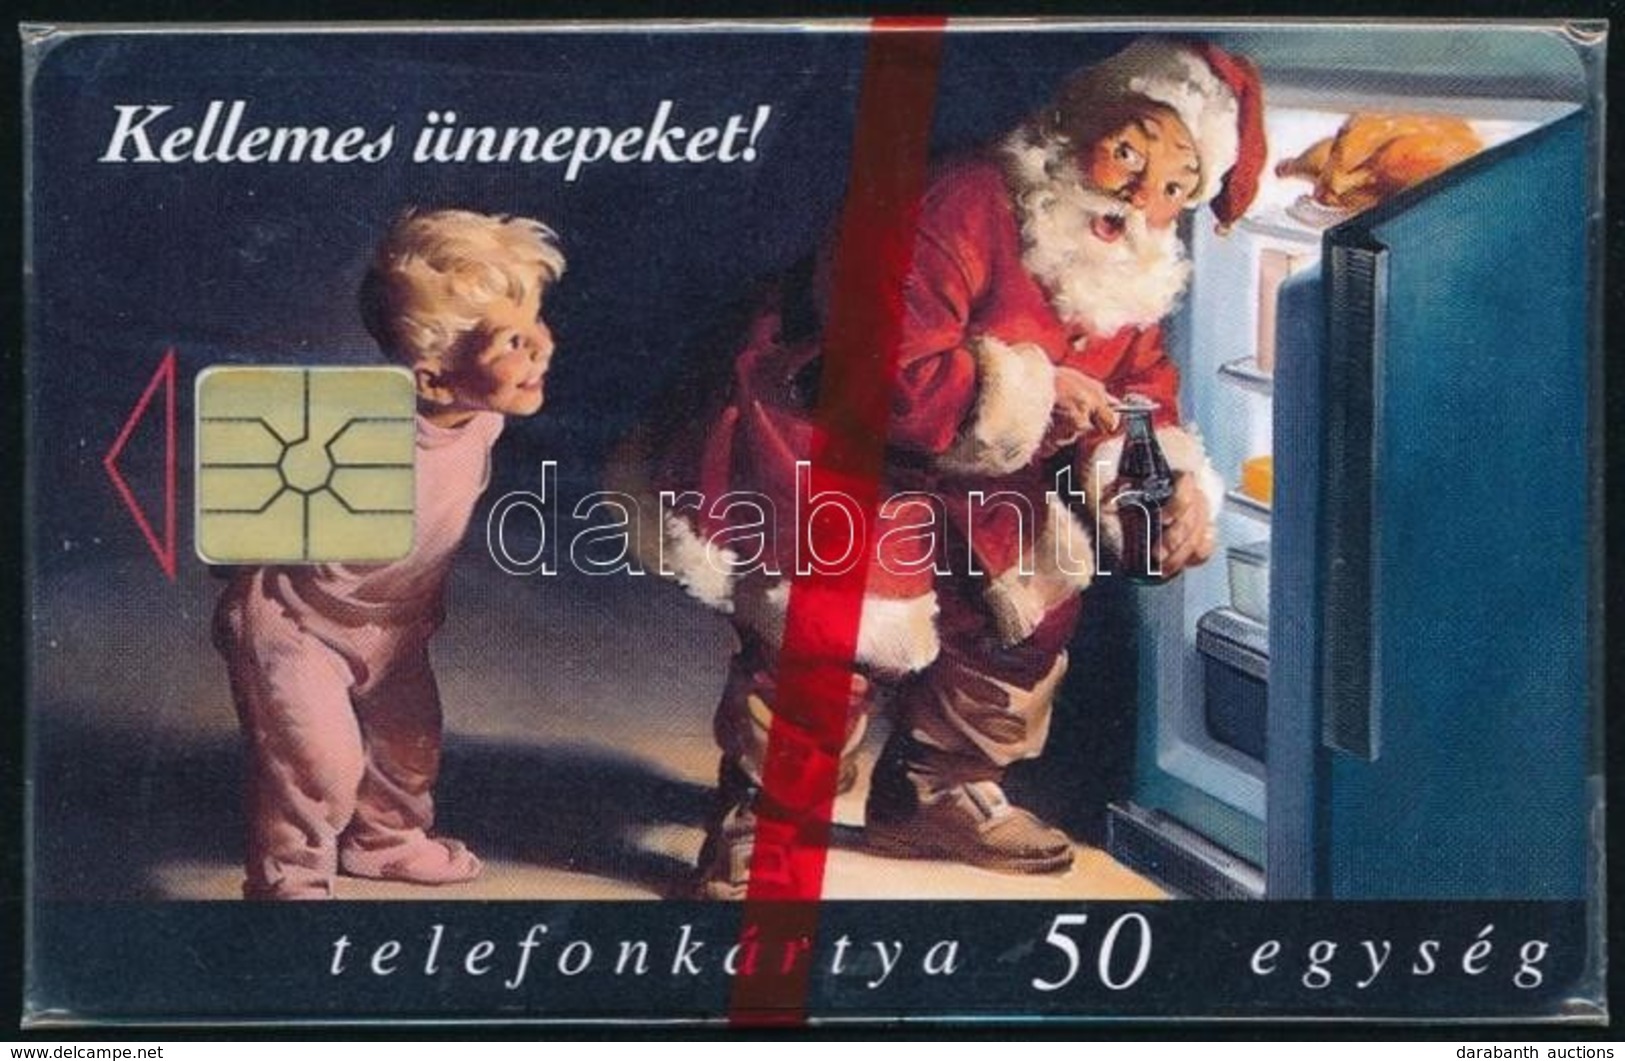 1997 Karácsony Használatlan Telefonkártya, Bontatlan Csomagolással - Non Classificati